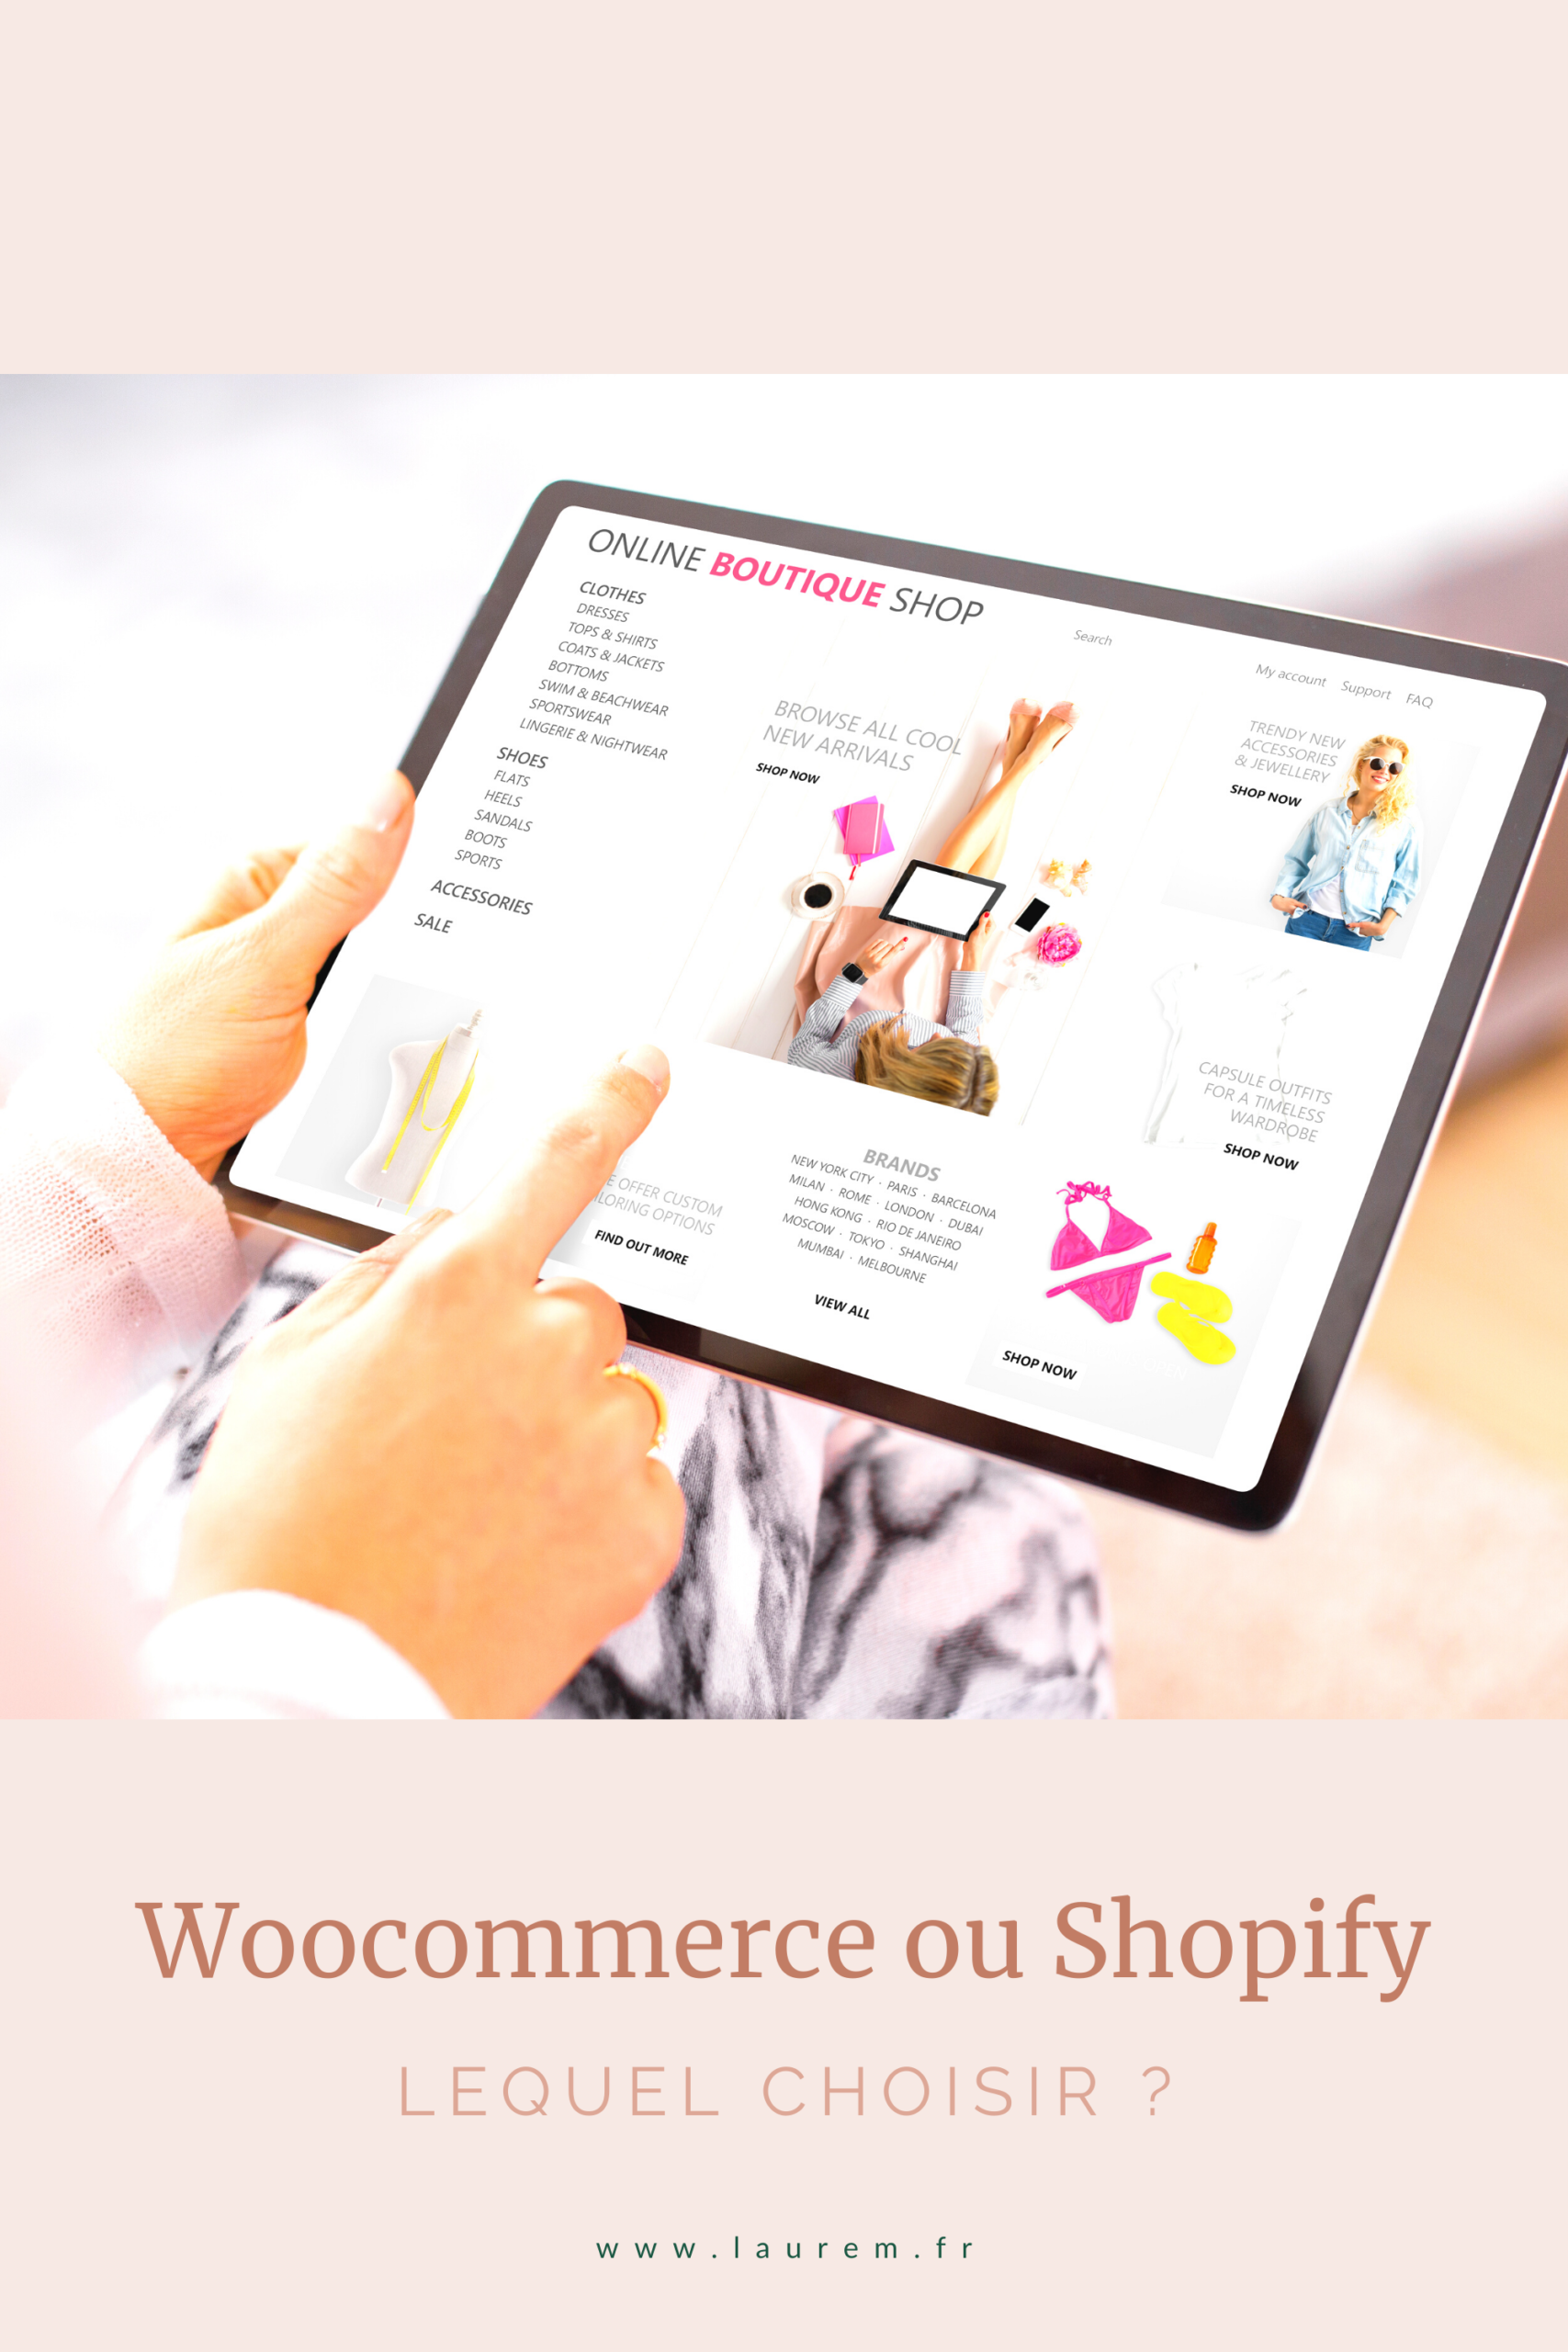 Découvre les différences entre Woocommerce et Shopify pour faire un choix éclairé et créer la boutique en ligne adaptée à ton projet ! #woocommerce #shopify #boutiqueenligne #commerceenligne